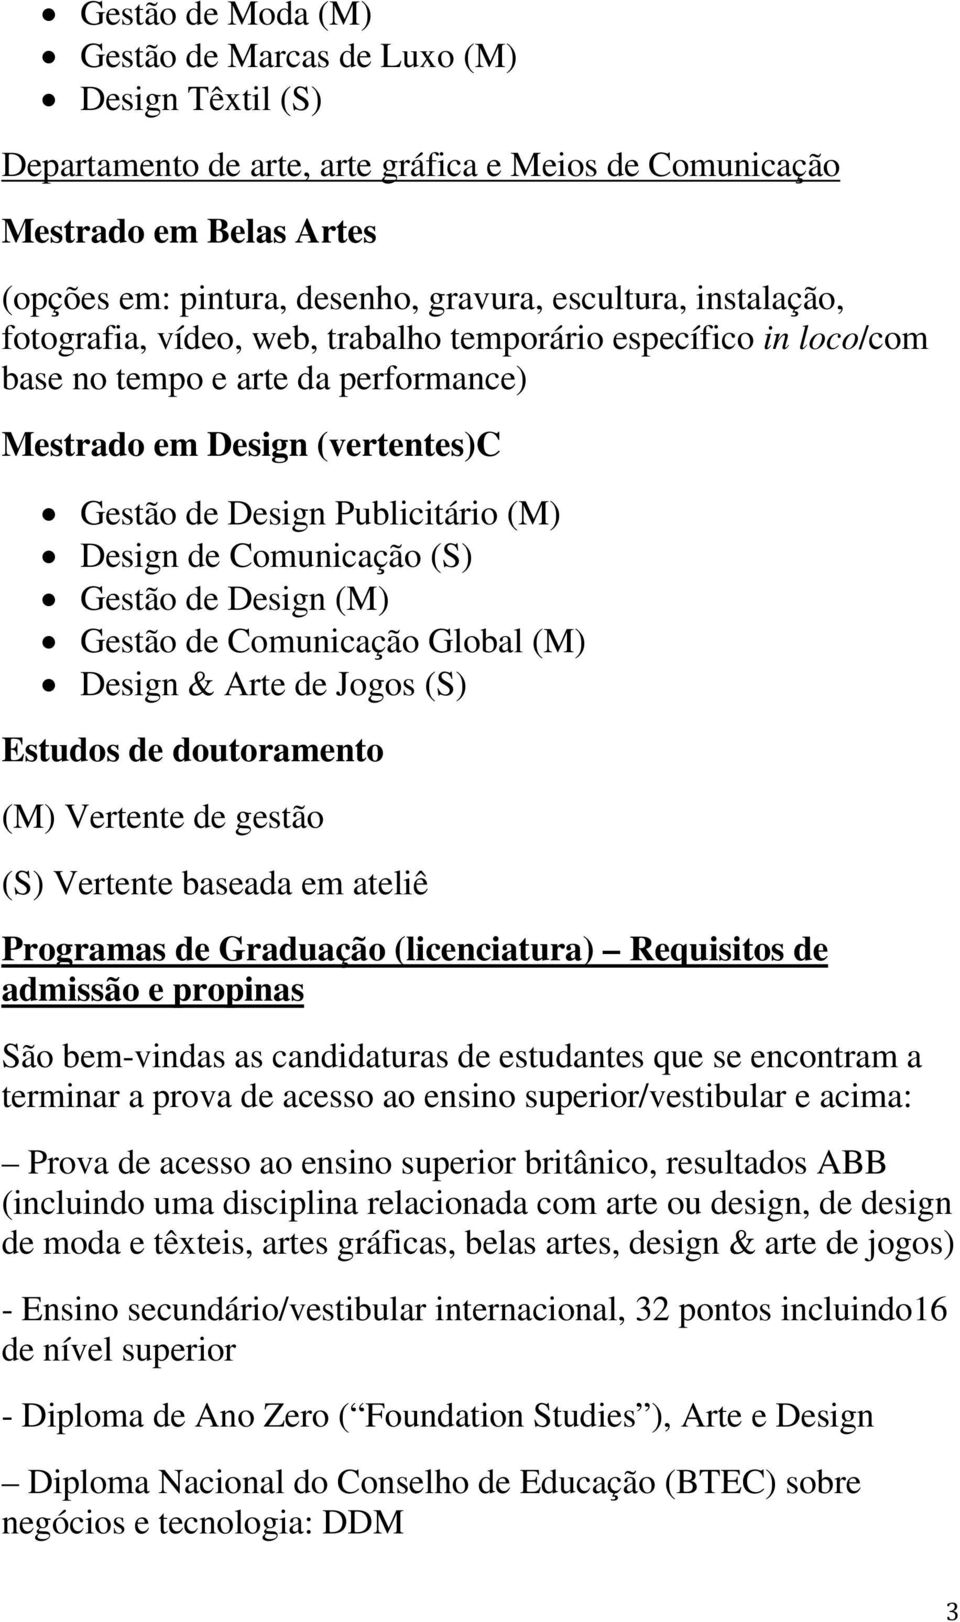 Comunicação (S) Gestão de Design (M) Gestão de Comunicação Global (M) Design & Arte de Jogos (S) Estudos de doutoramento (M) Vertente de gestão (S) Vertente baseada em ateliê Programas de Graduação